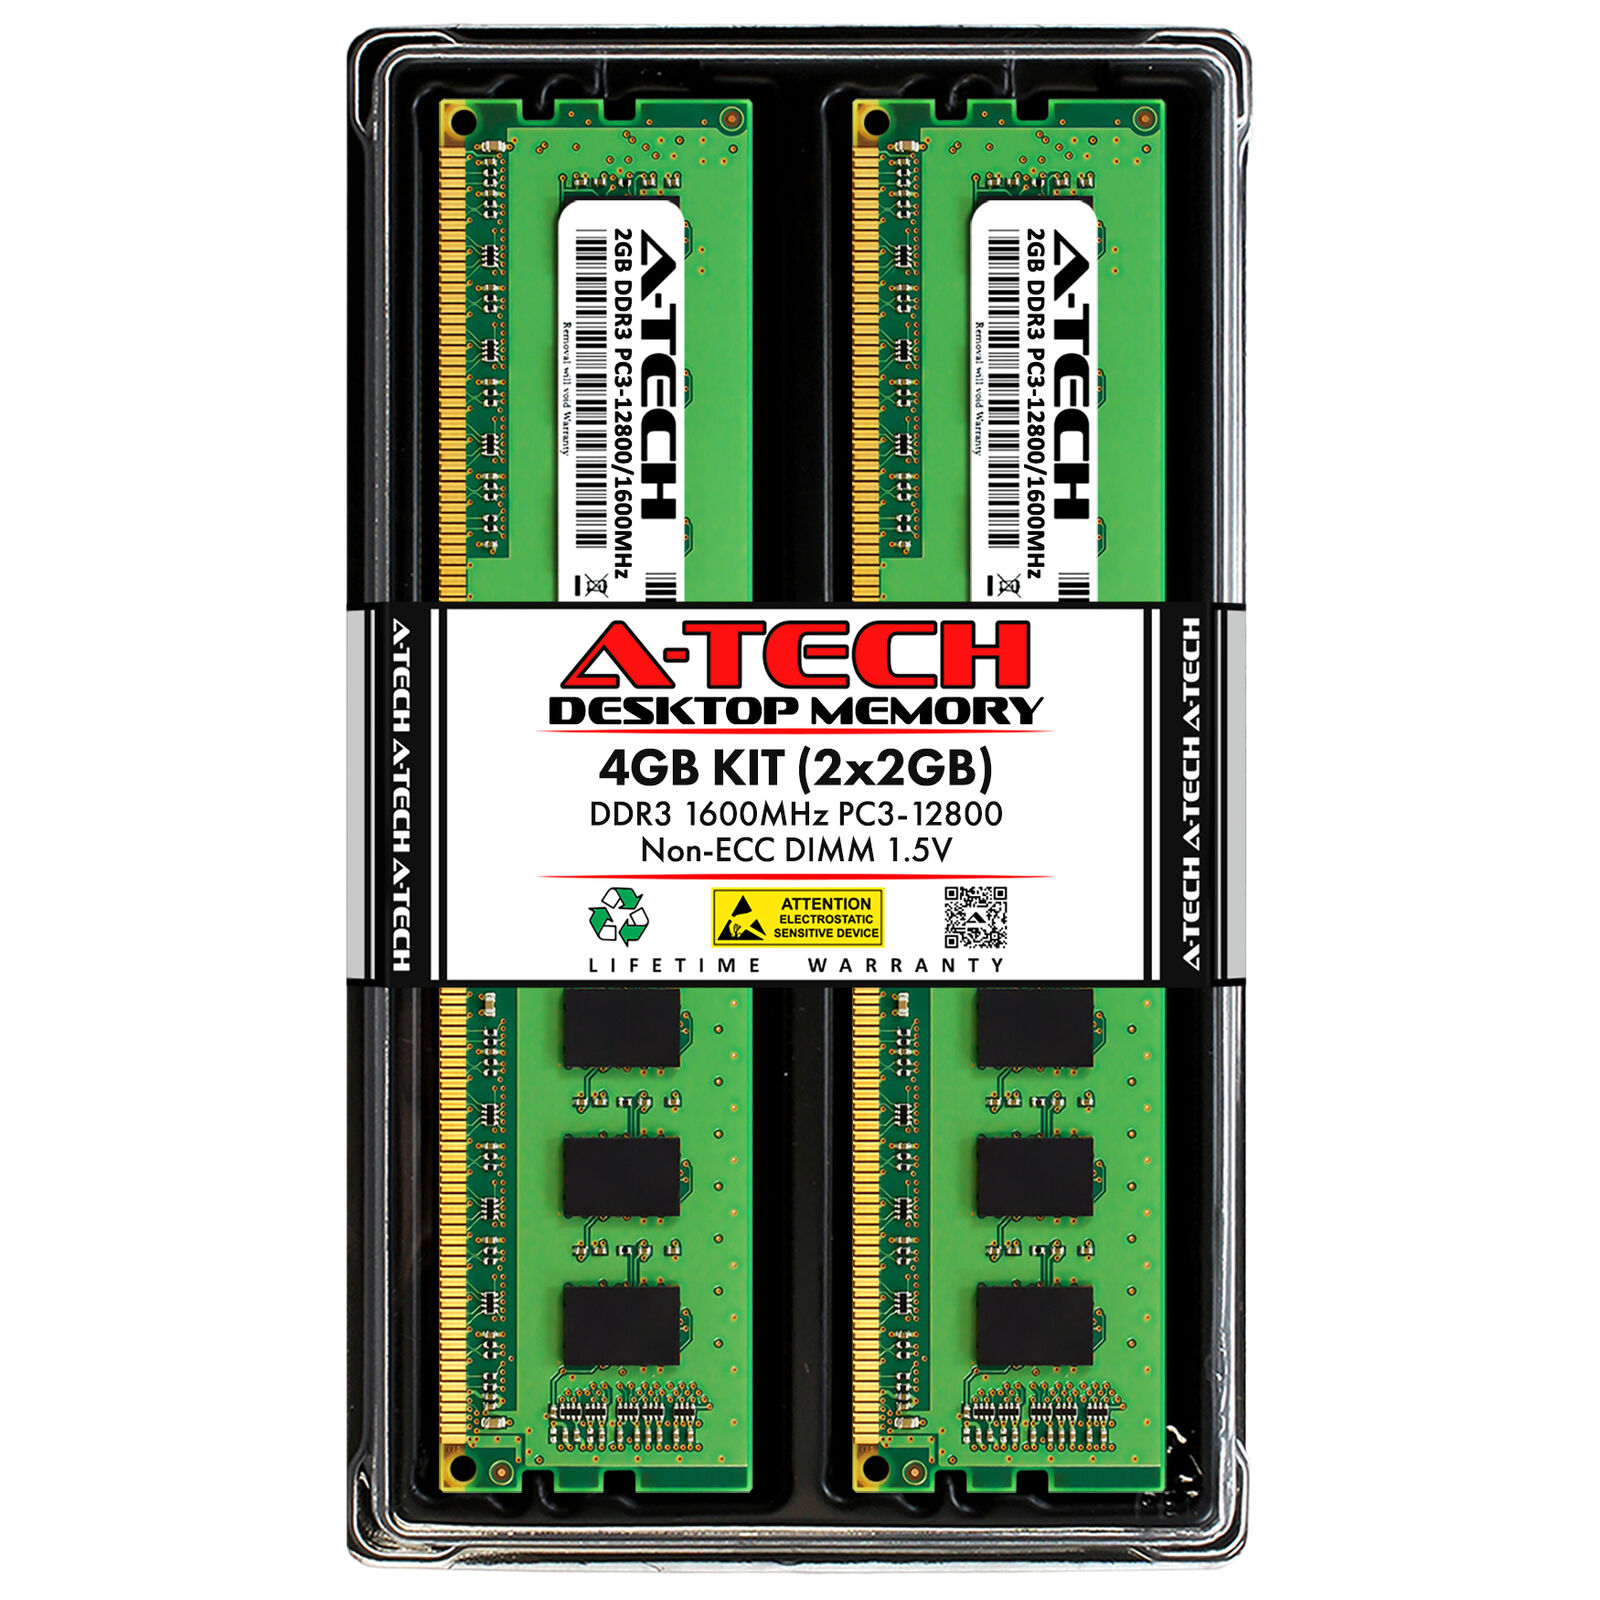 4GB 2x2GB PC3-12800U ASRock IMB-770 B75M-ITX N68-GS4 FX H61M-DGS R2.0 Memory RAM